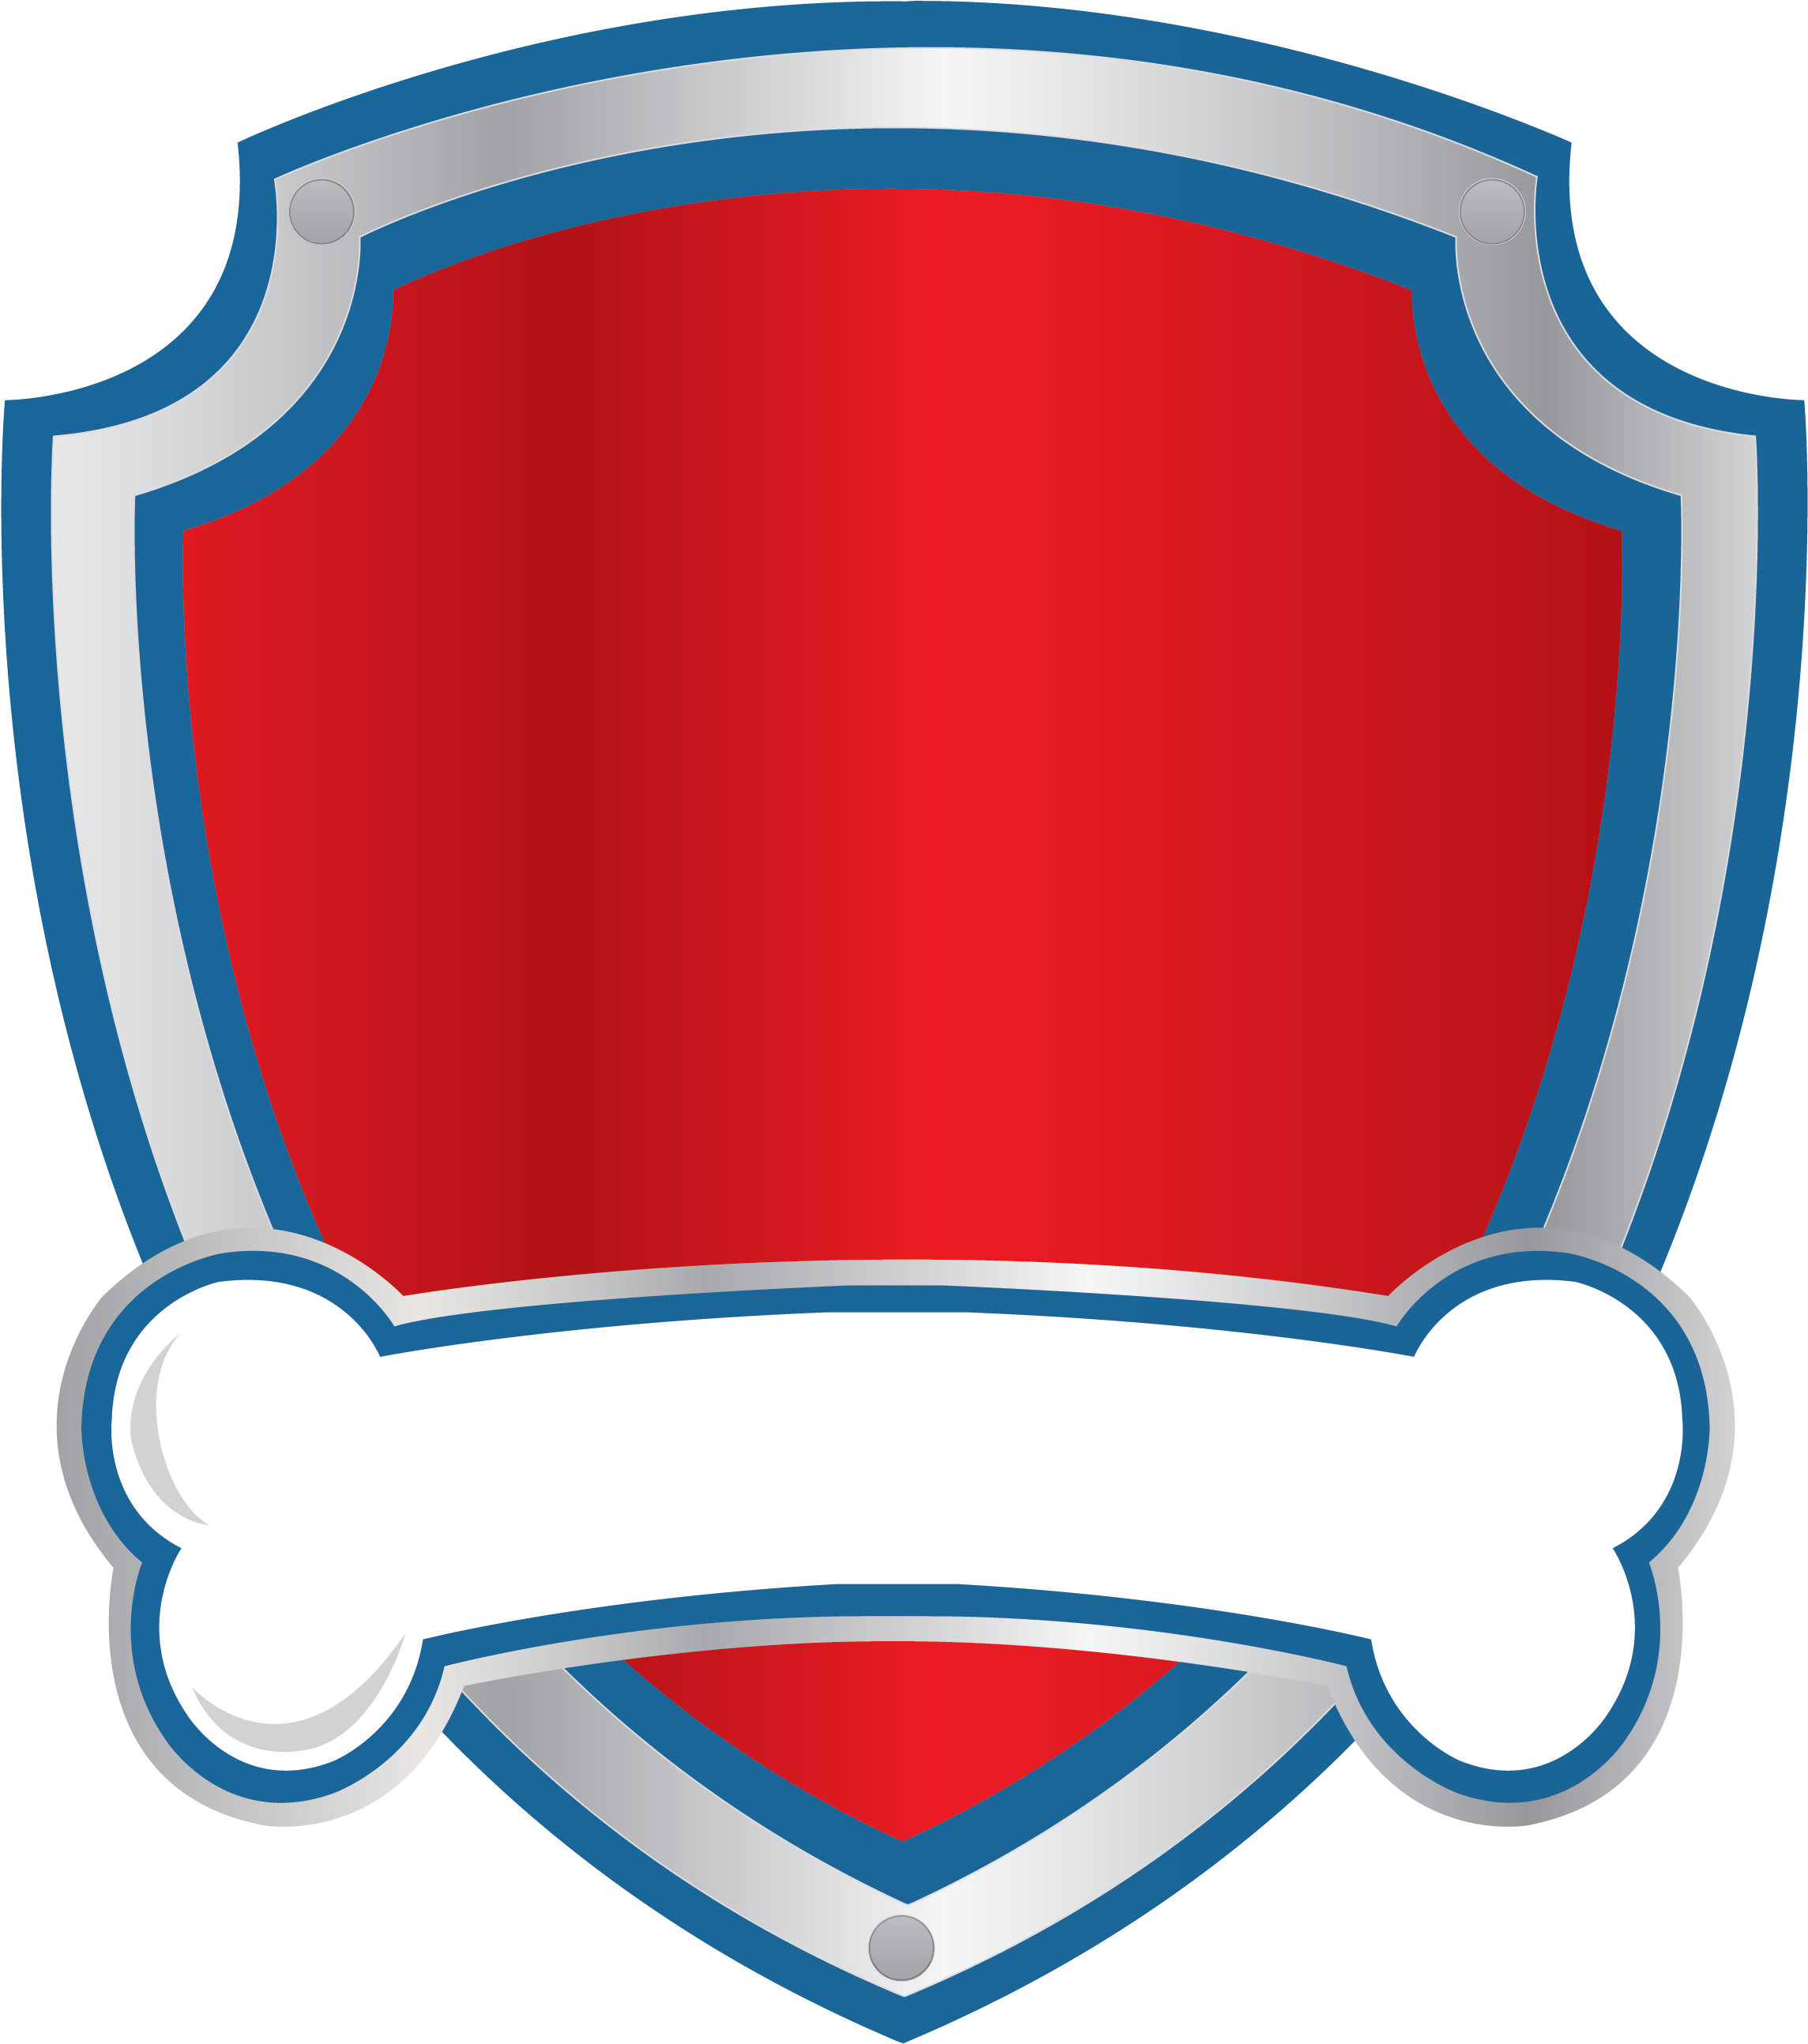 Logo Blank 01 - Logo Paw Patrol Png - Free Transparent PNG Download